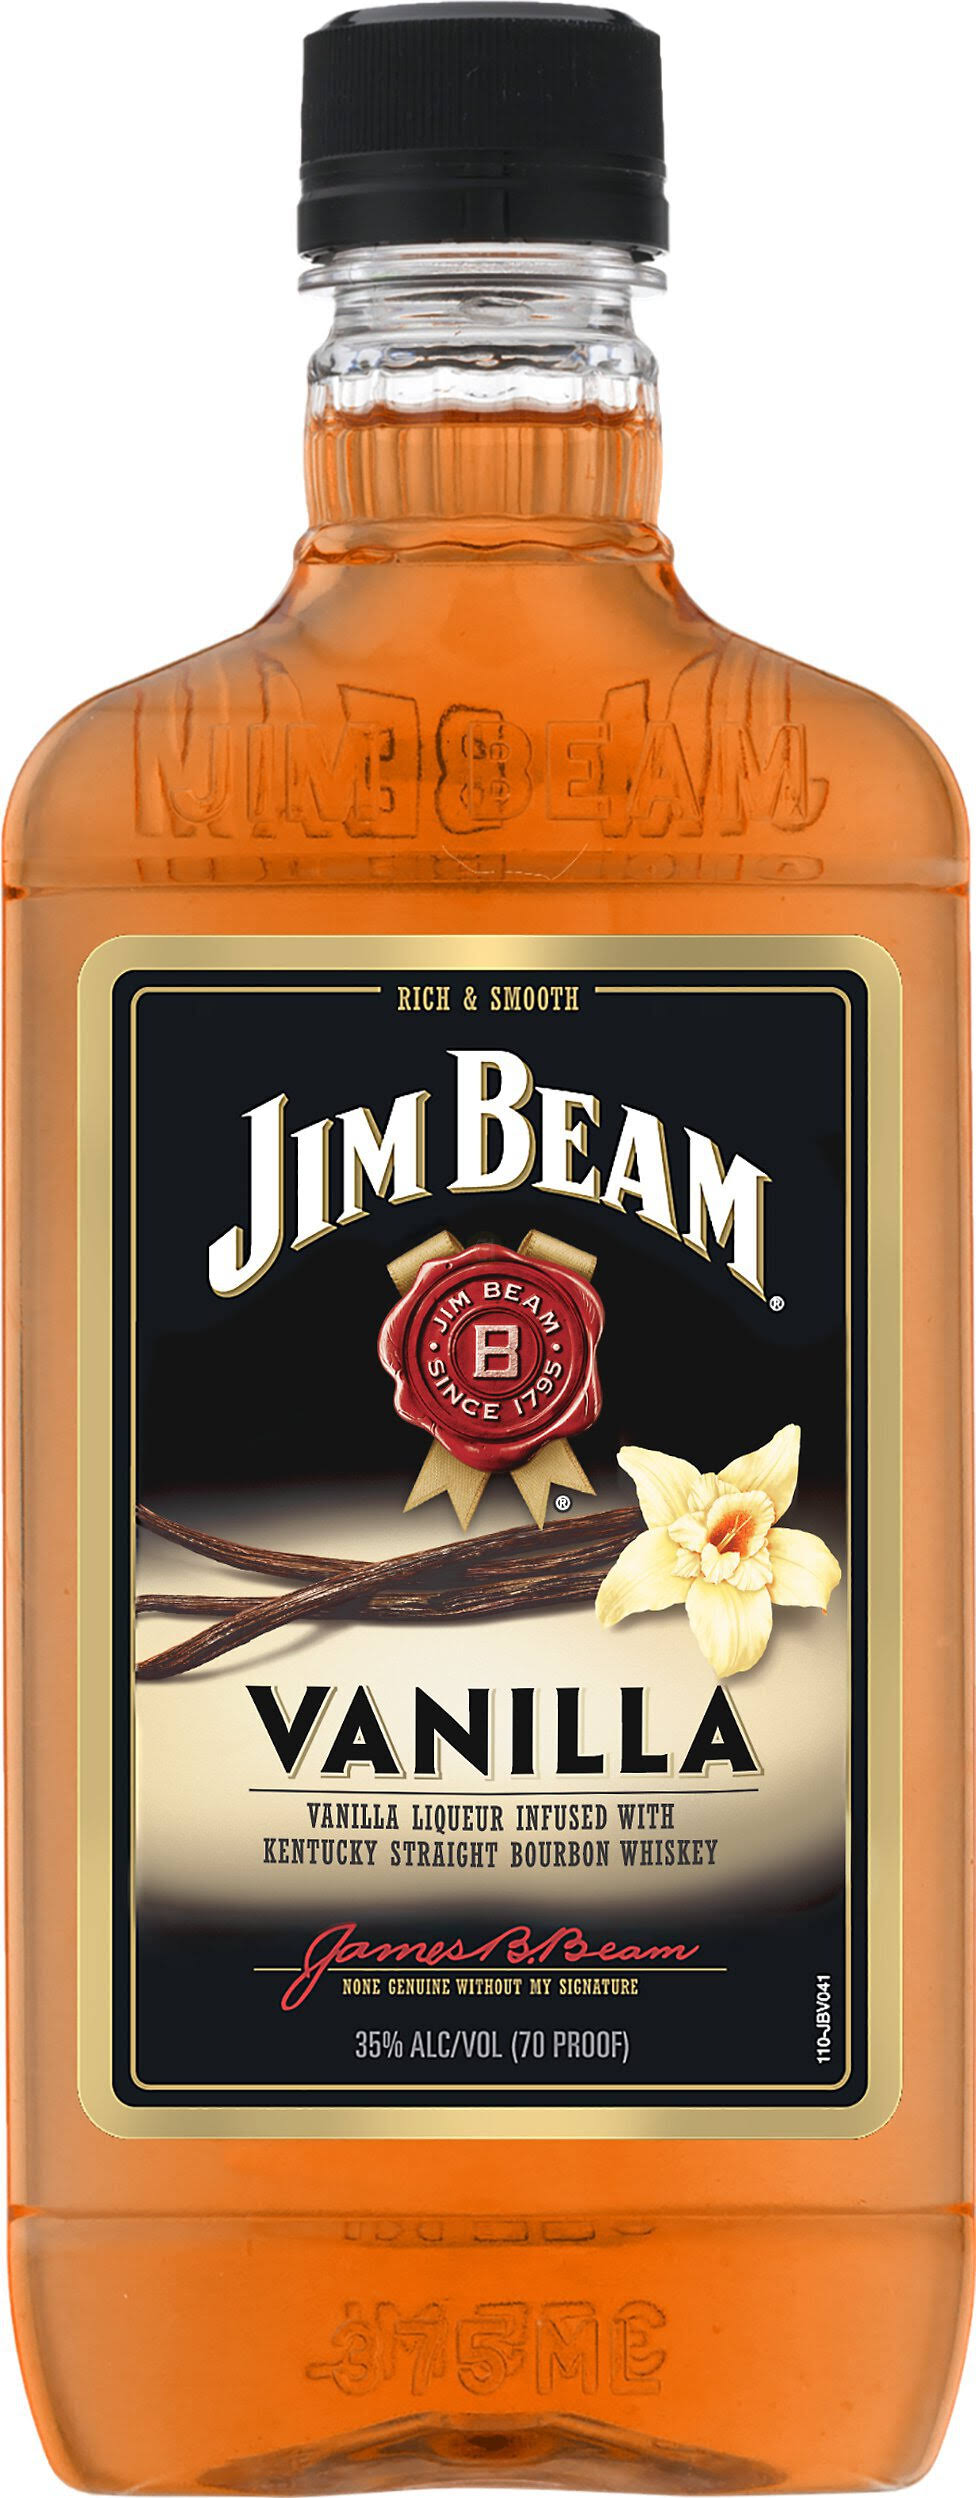 Jim Beam Vanilla Bourbon Whiskey - 375ml